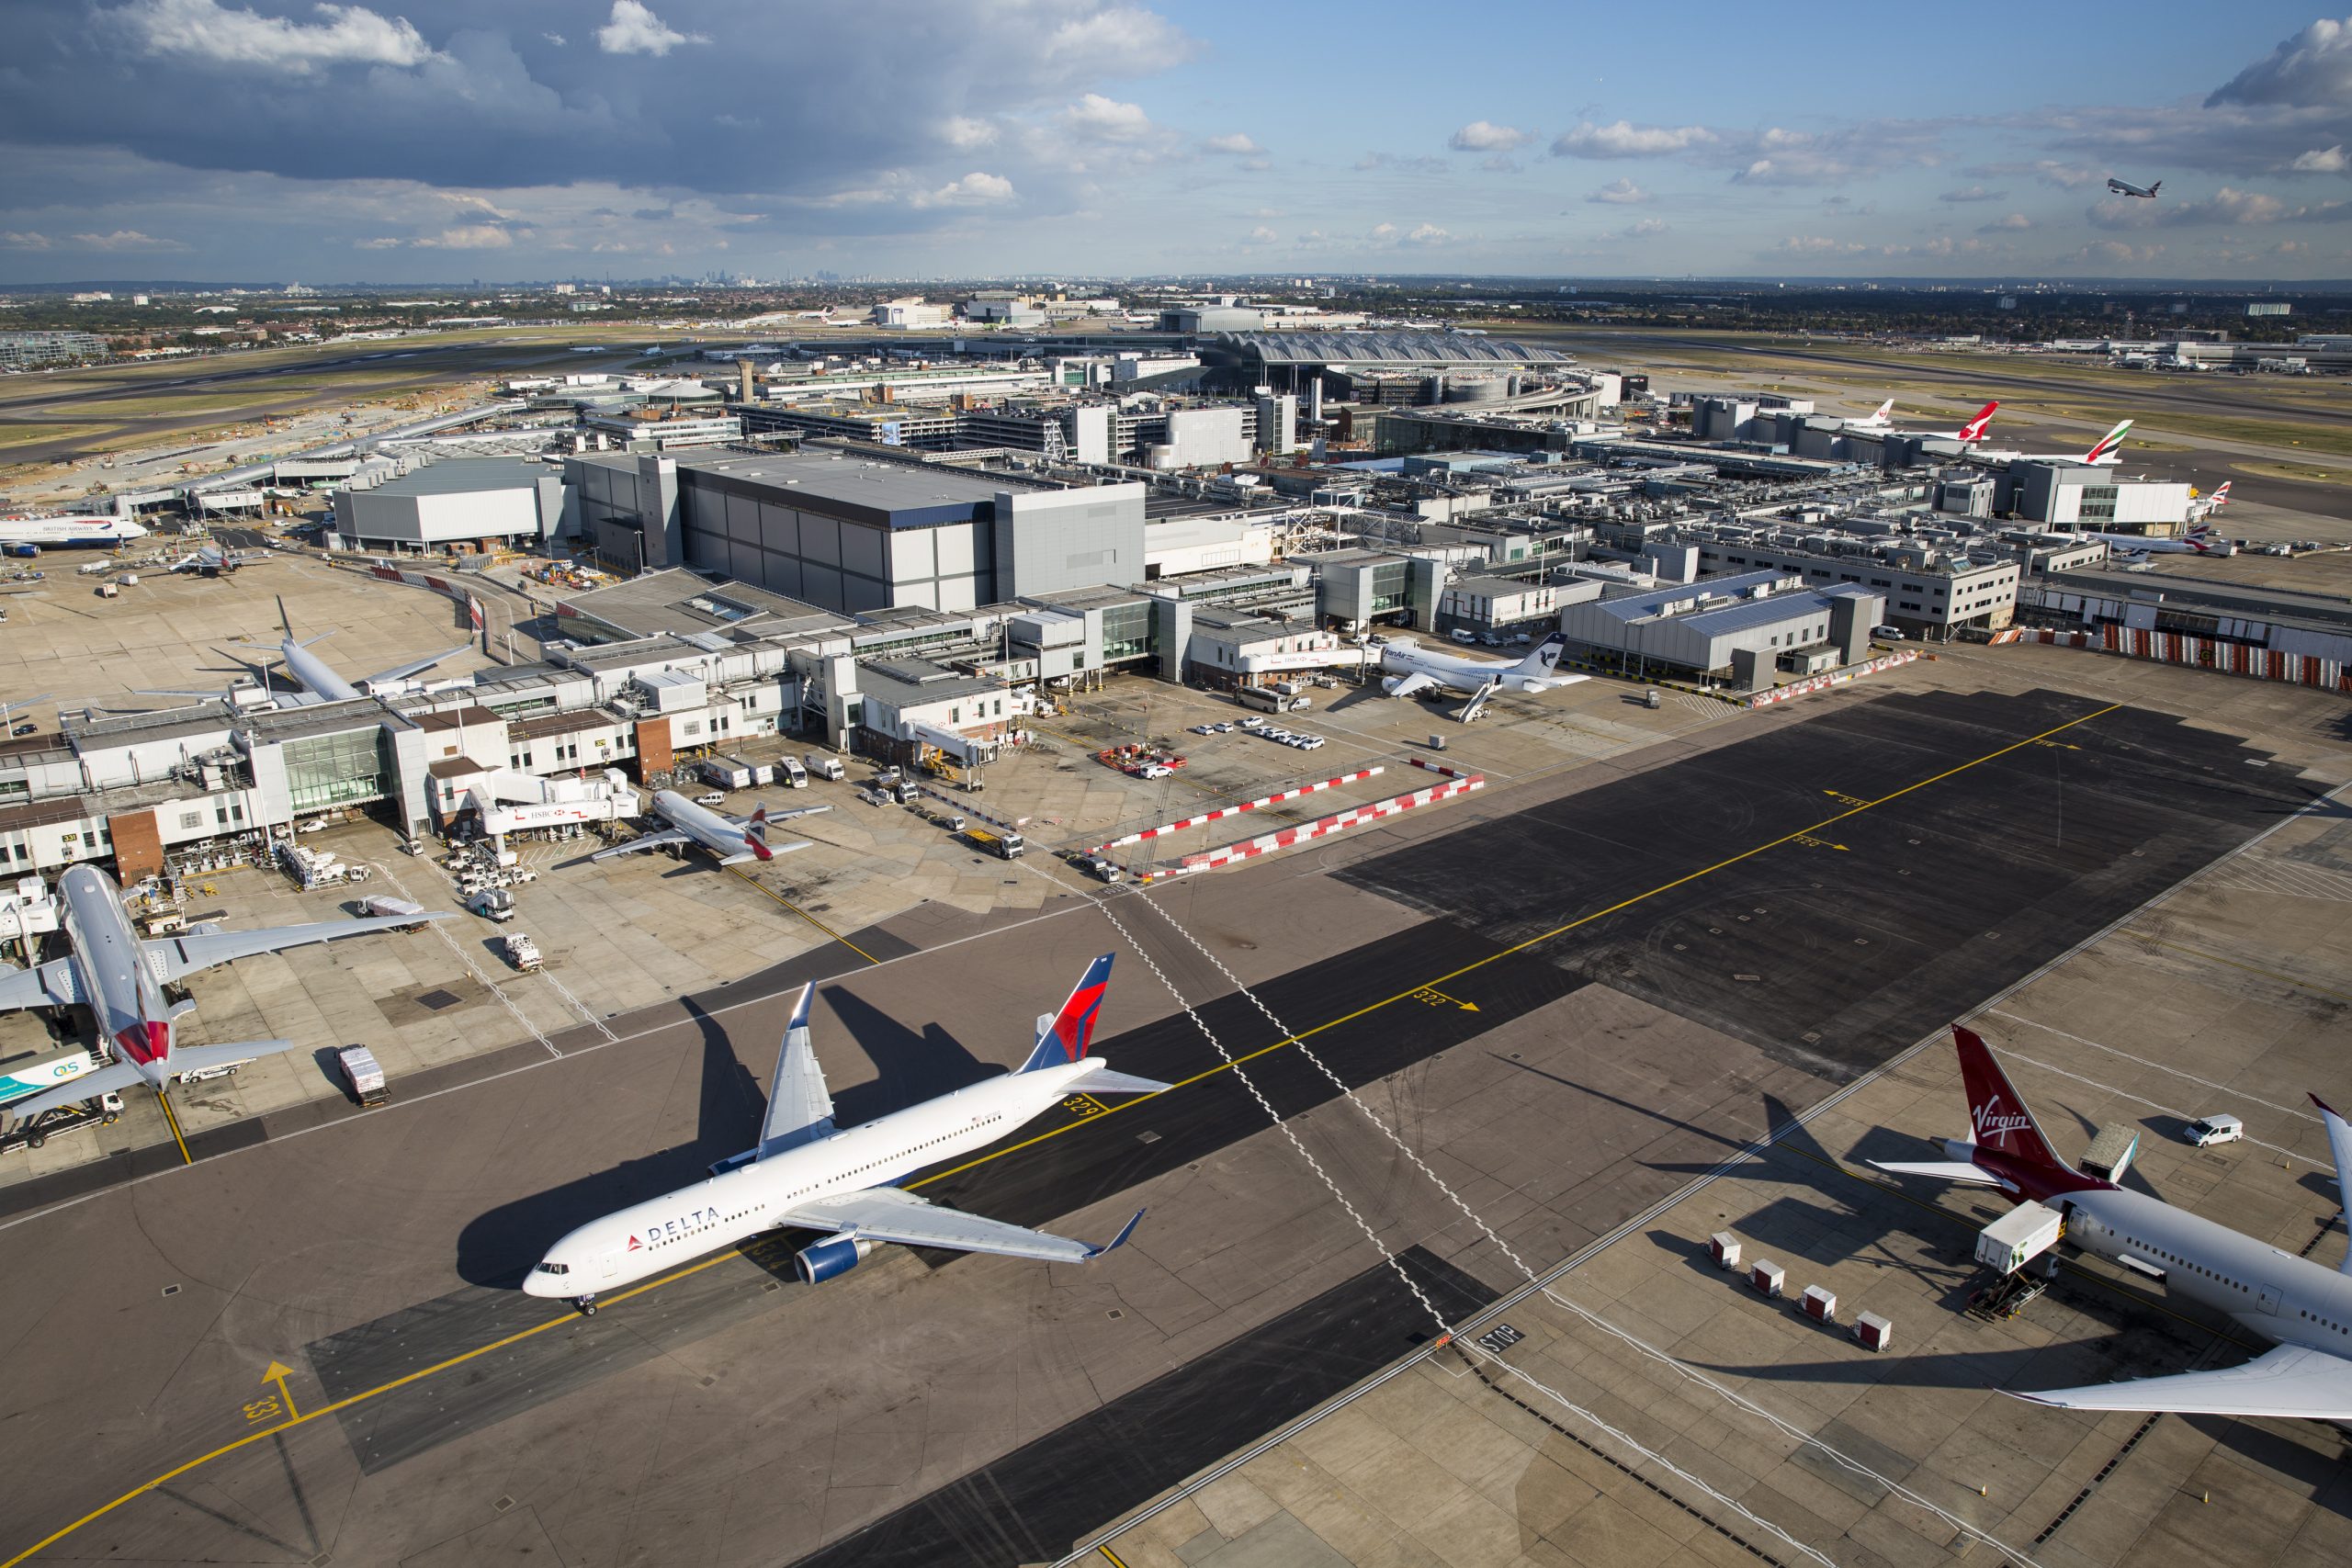 Perturbările traficului aerian în Marea Britanie vor mai continua timp de câteva zile. Autoritățile avertizează pasagerii că există în continuare întârzieri semnificative